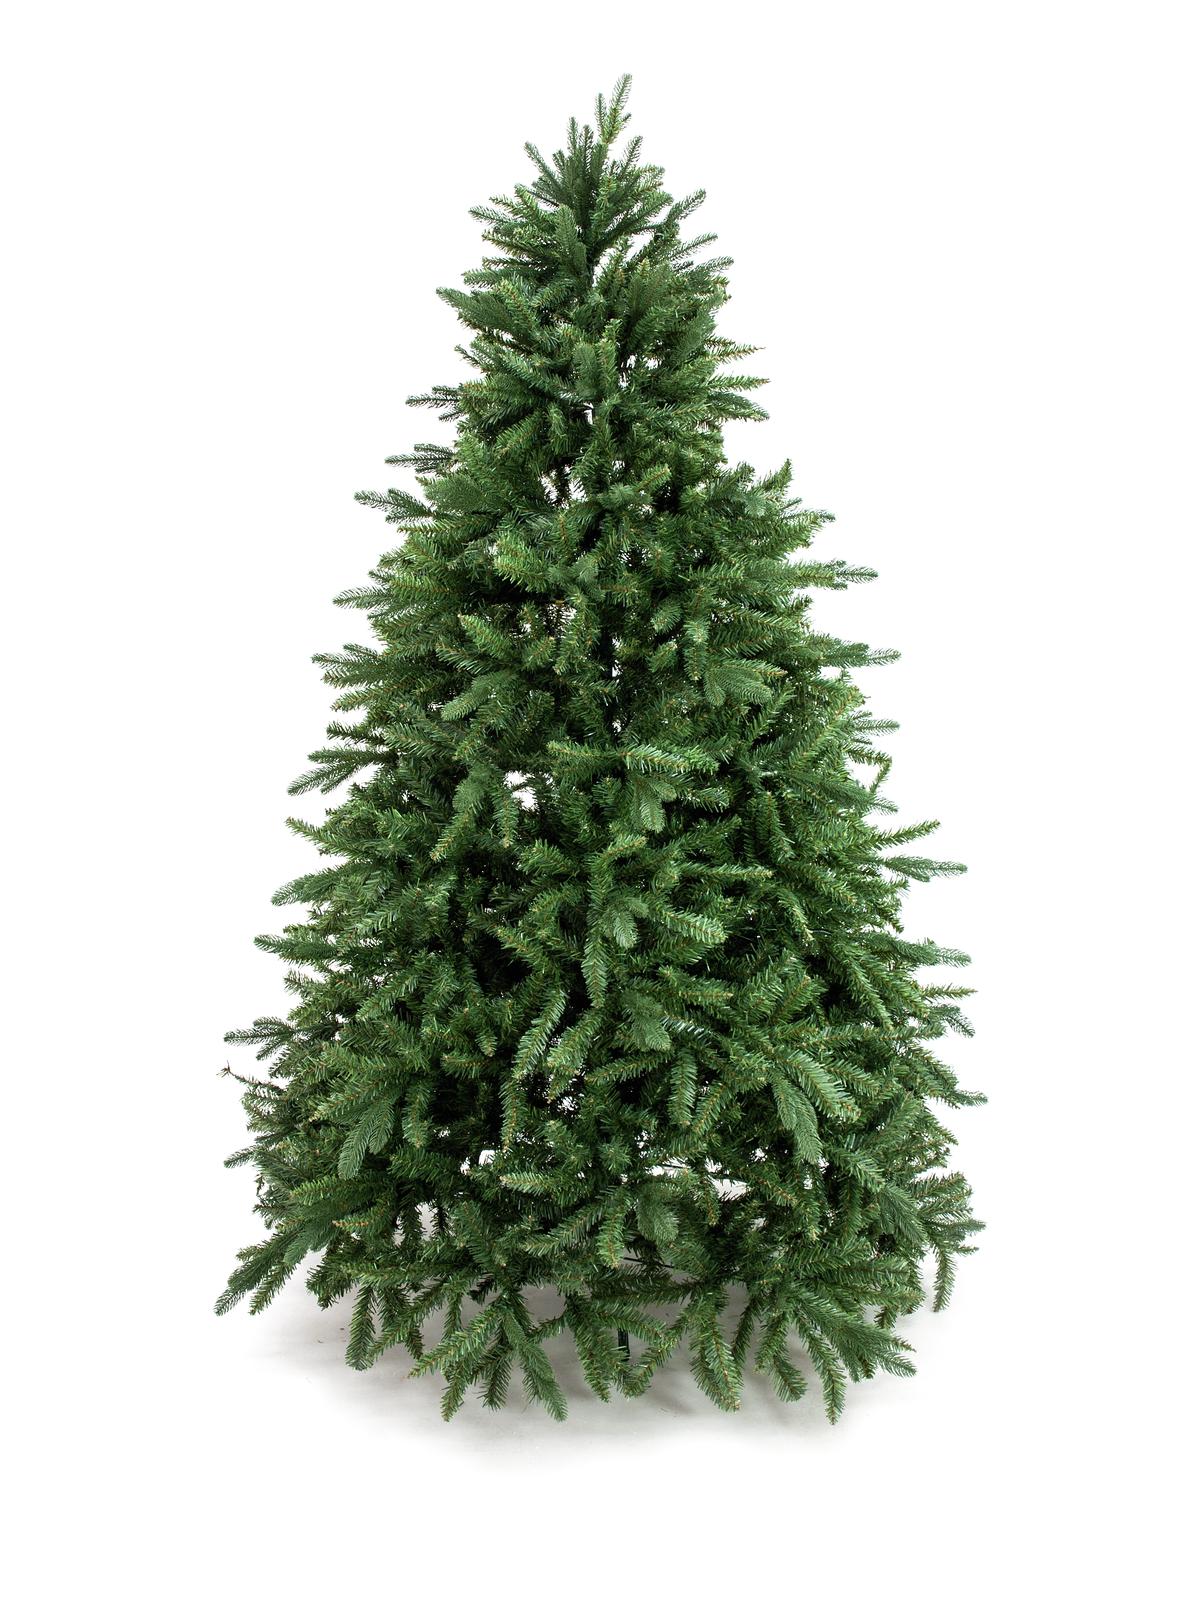 Umělý vánoční stromeček - deluxe jedle, 180 cm